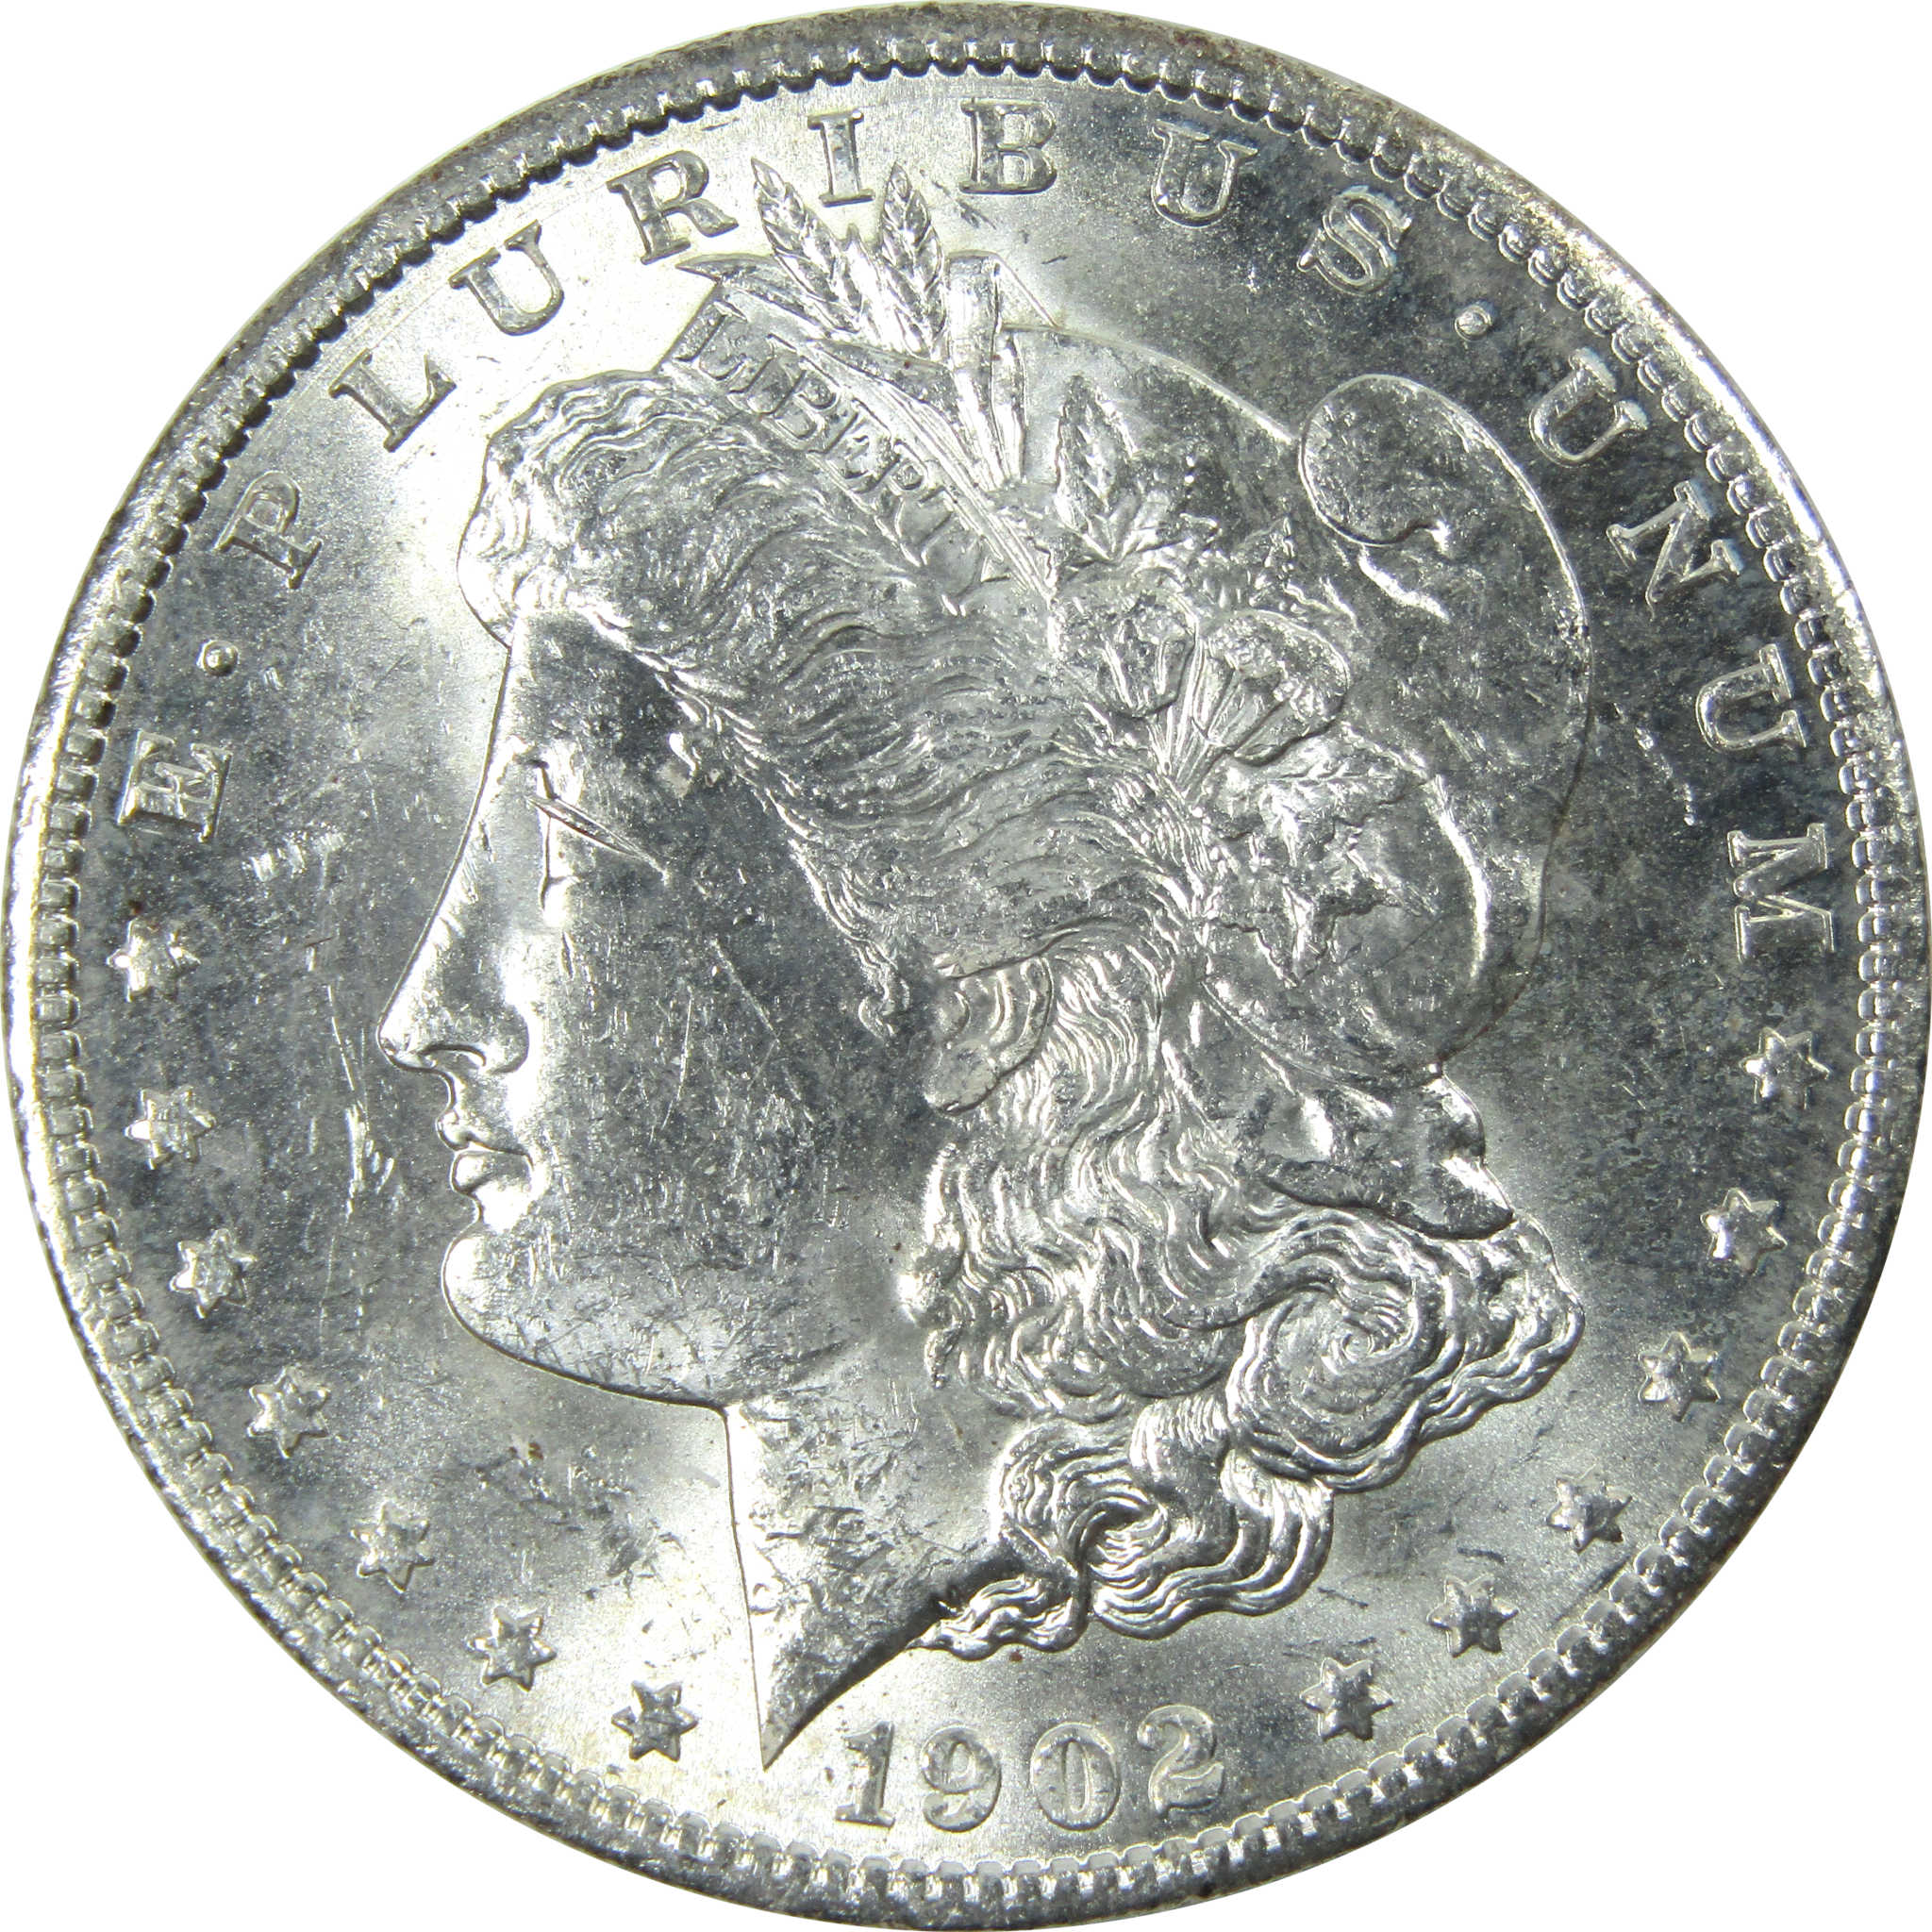 1902 O Morgan Dollar Uncirculated Silver $1 Coin SKU:I13937 - Morgan coin - Morgan silver dollar - Morgan silver dollar for sale - Profile Coins &amp; Collectibles